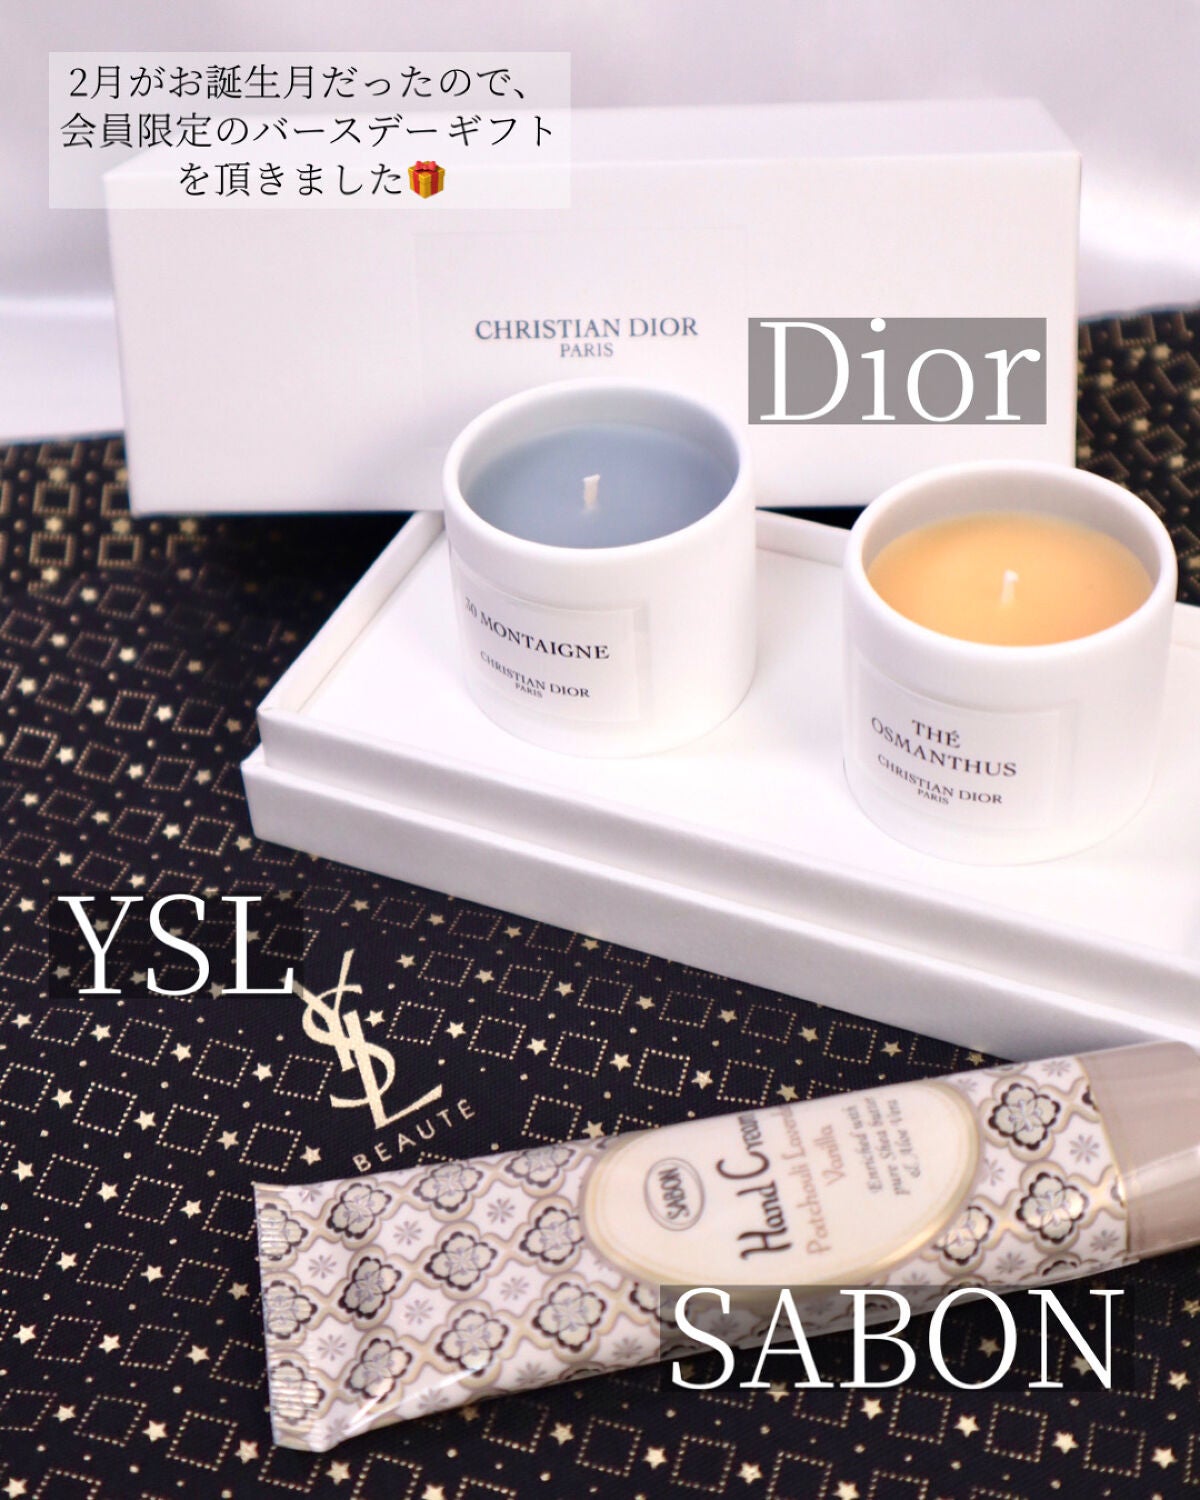 限定SALE!ポーチ付Dior/トラベルギフトセット/プラチナ会員限定ノベルティ